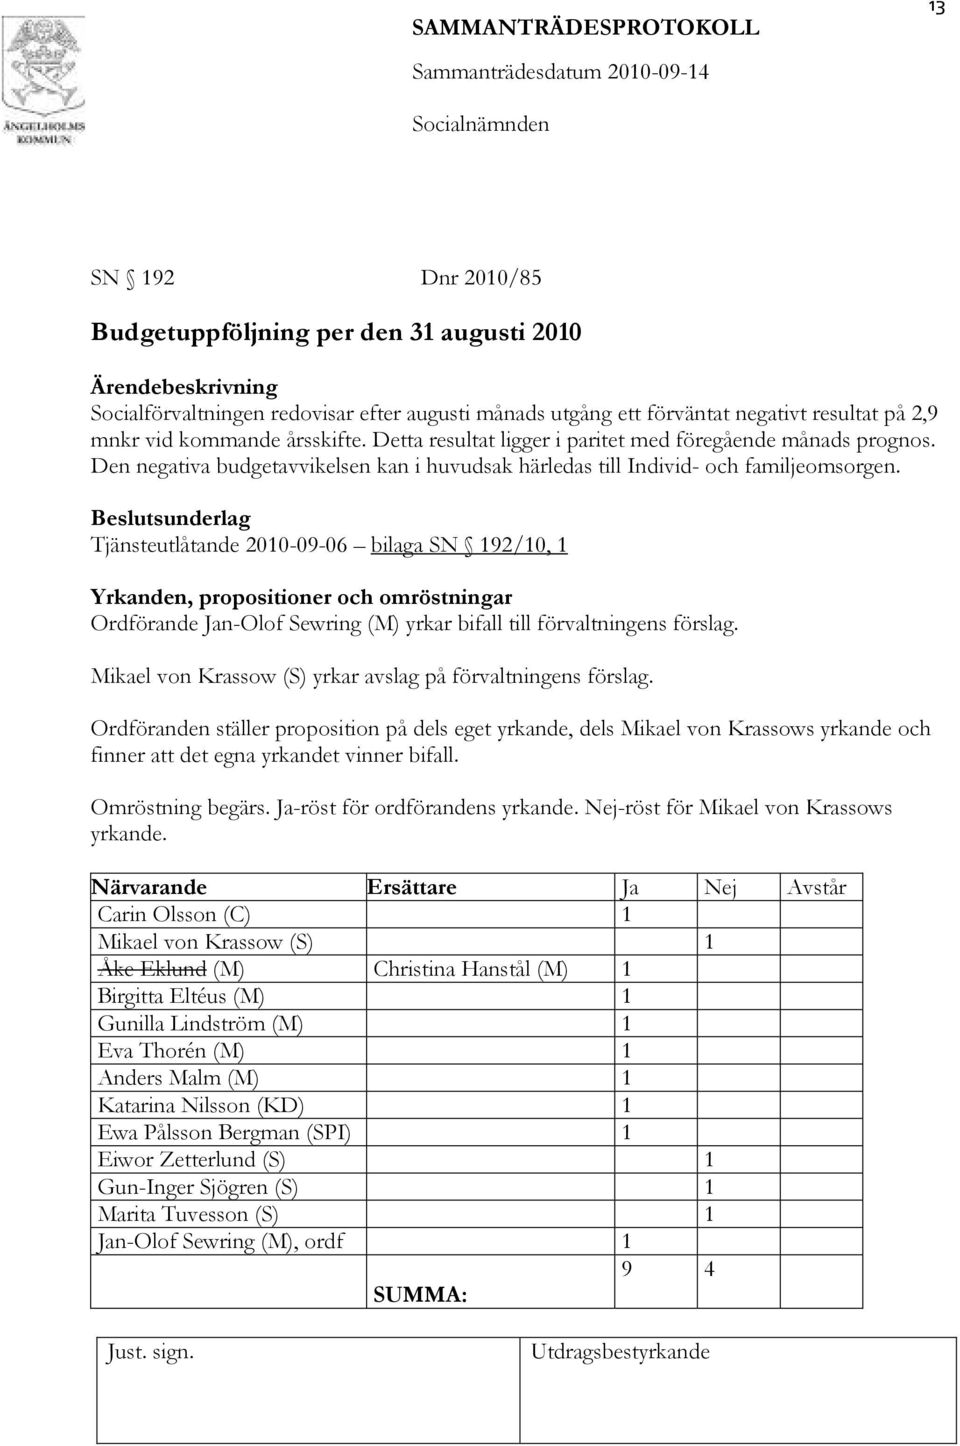 sunderlag Tjänsteutlåtande 2010-09-06 bilaga SN 192/10, 1 Yrkanden, propositioner och omröstningar Ordförande Jan-Olof Sewring (M) yrkar bifall till förvaltningens förslag.